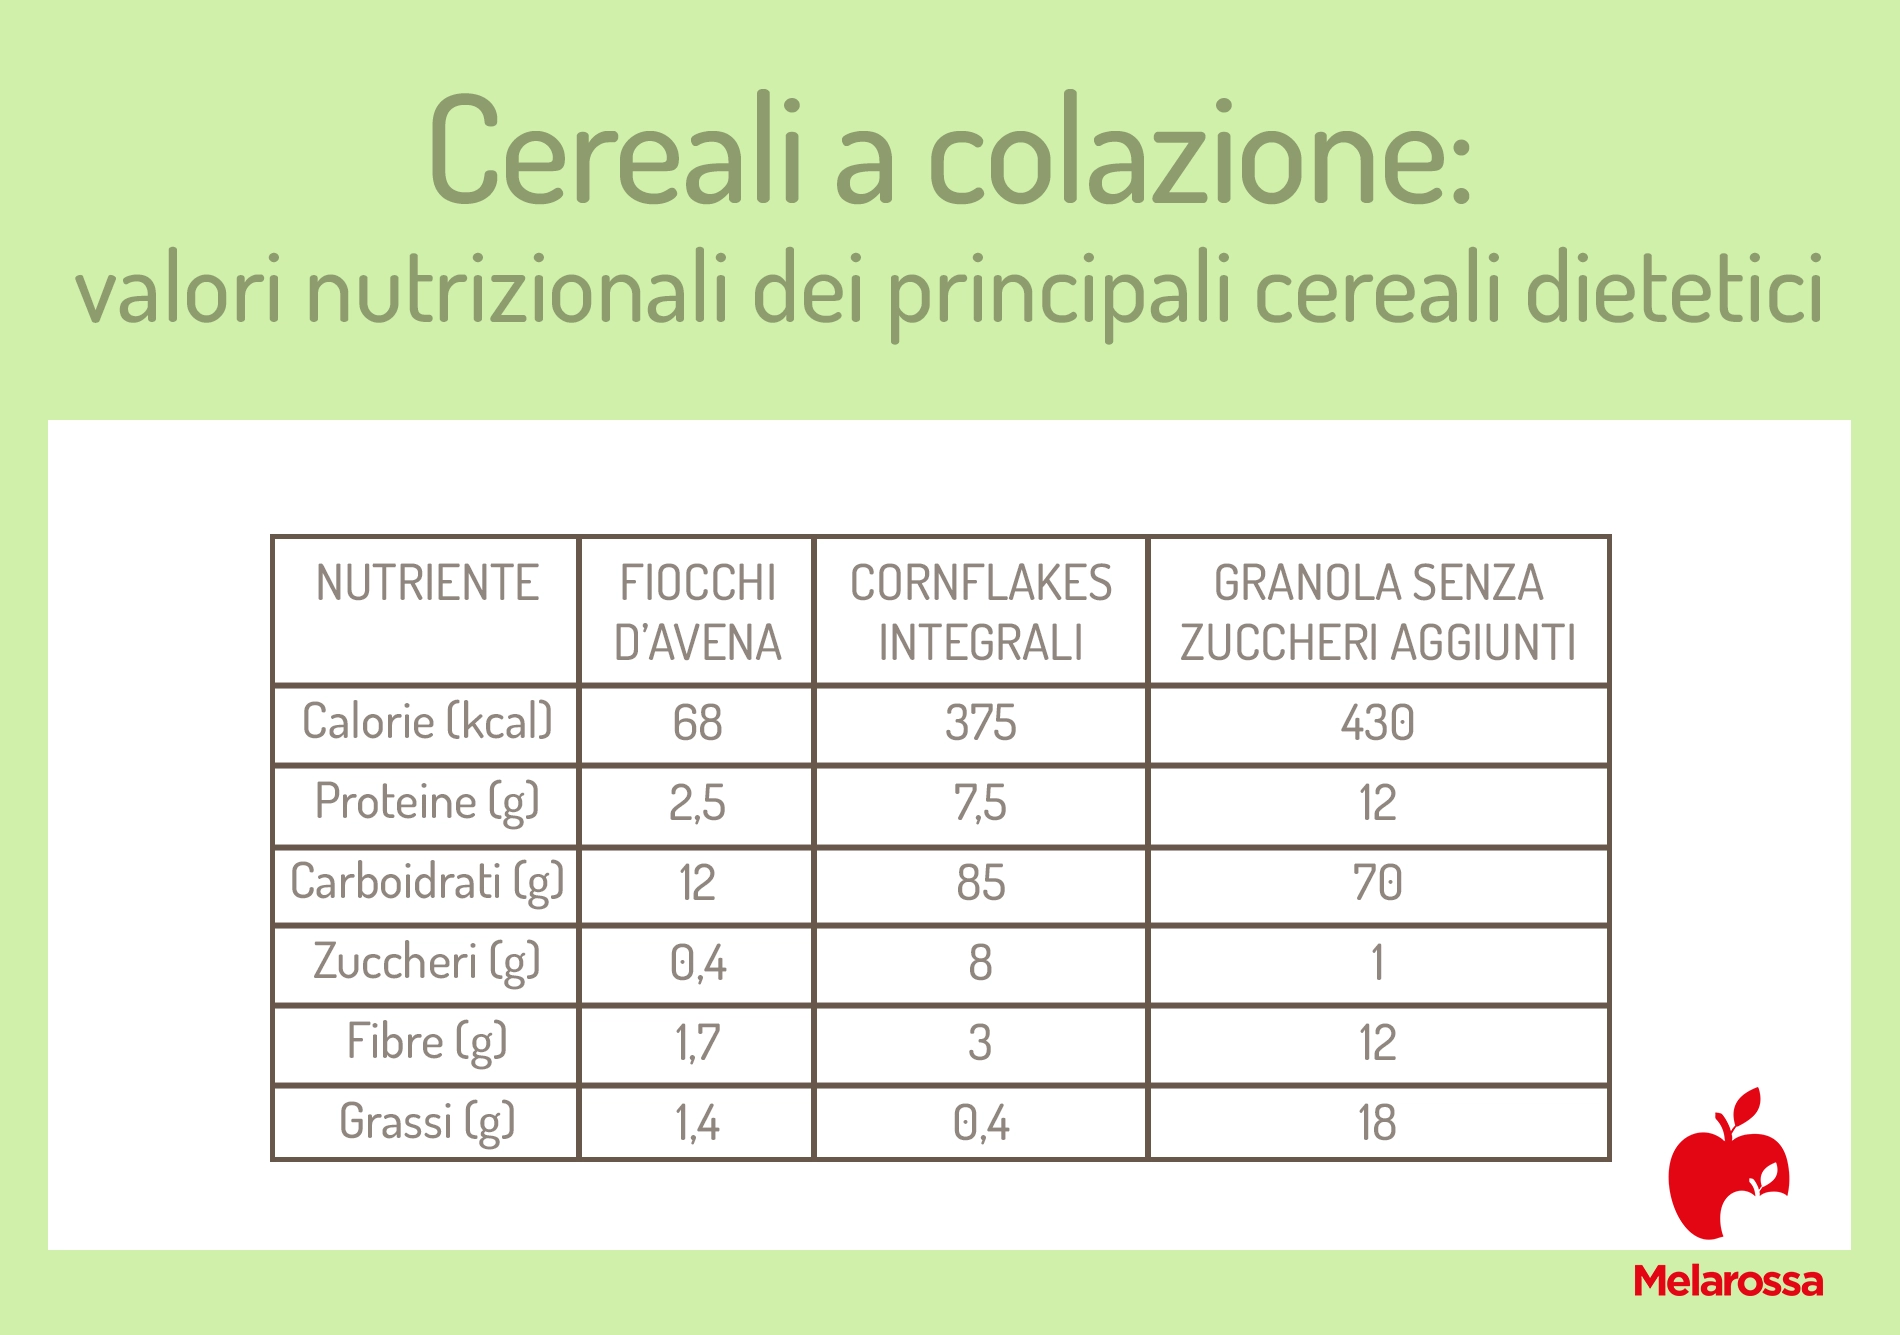 cereali colazione: calorie dei princicipali cereali dietetici